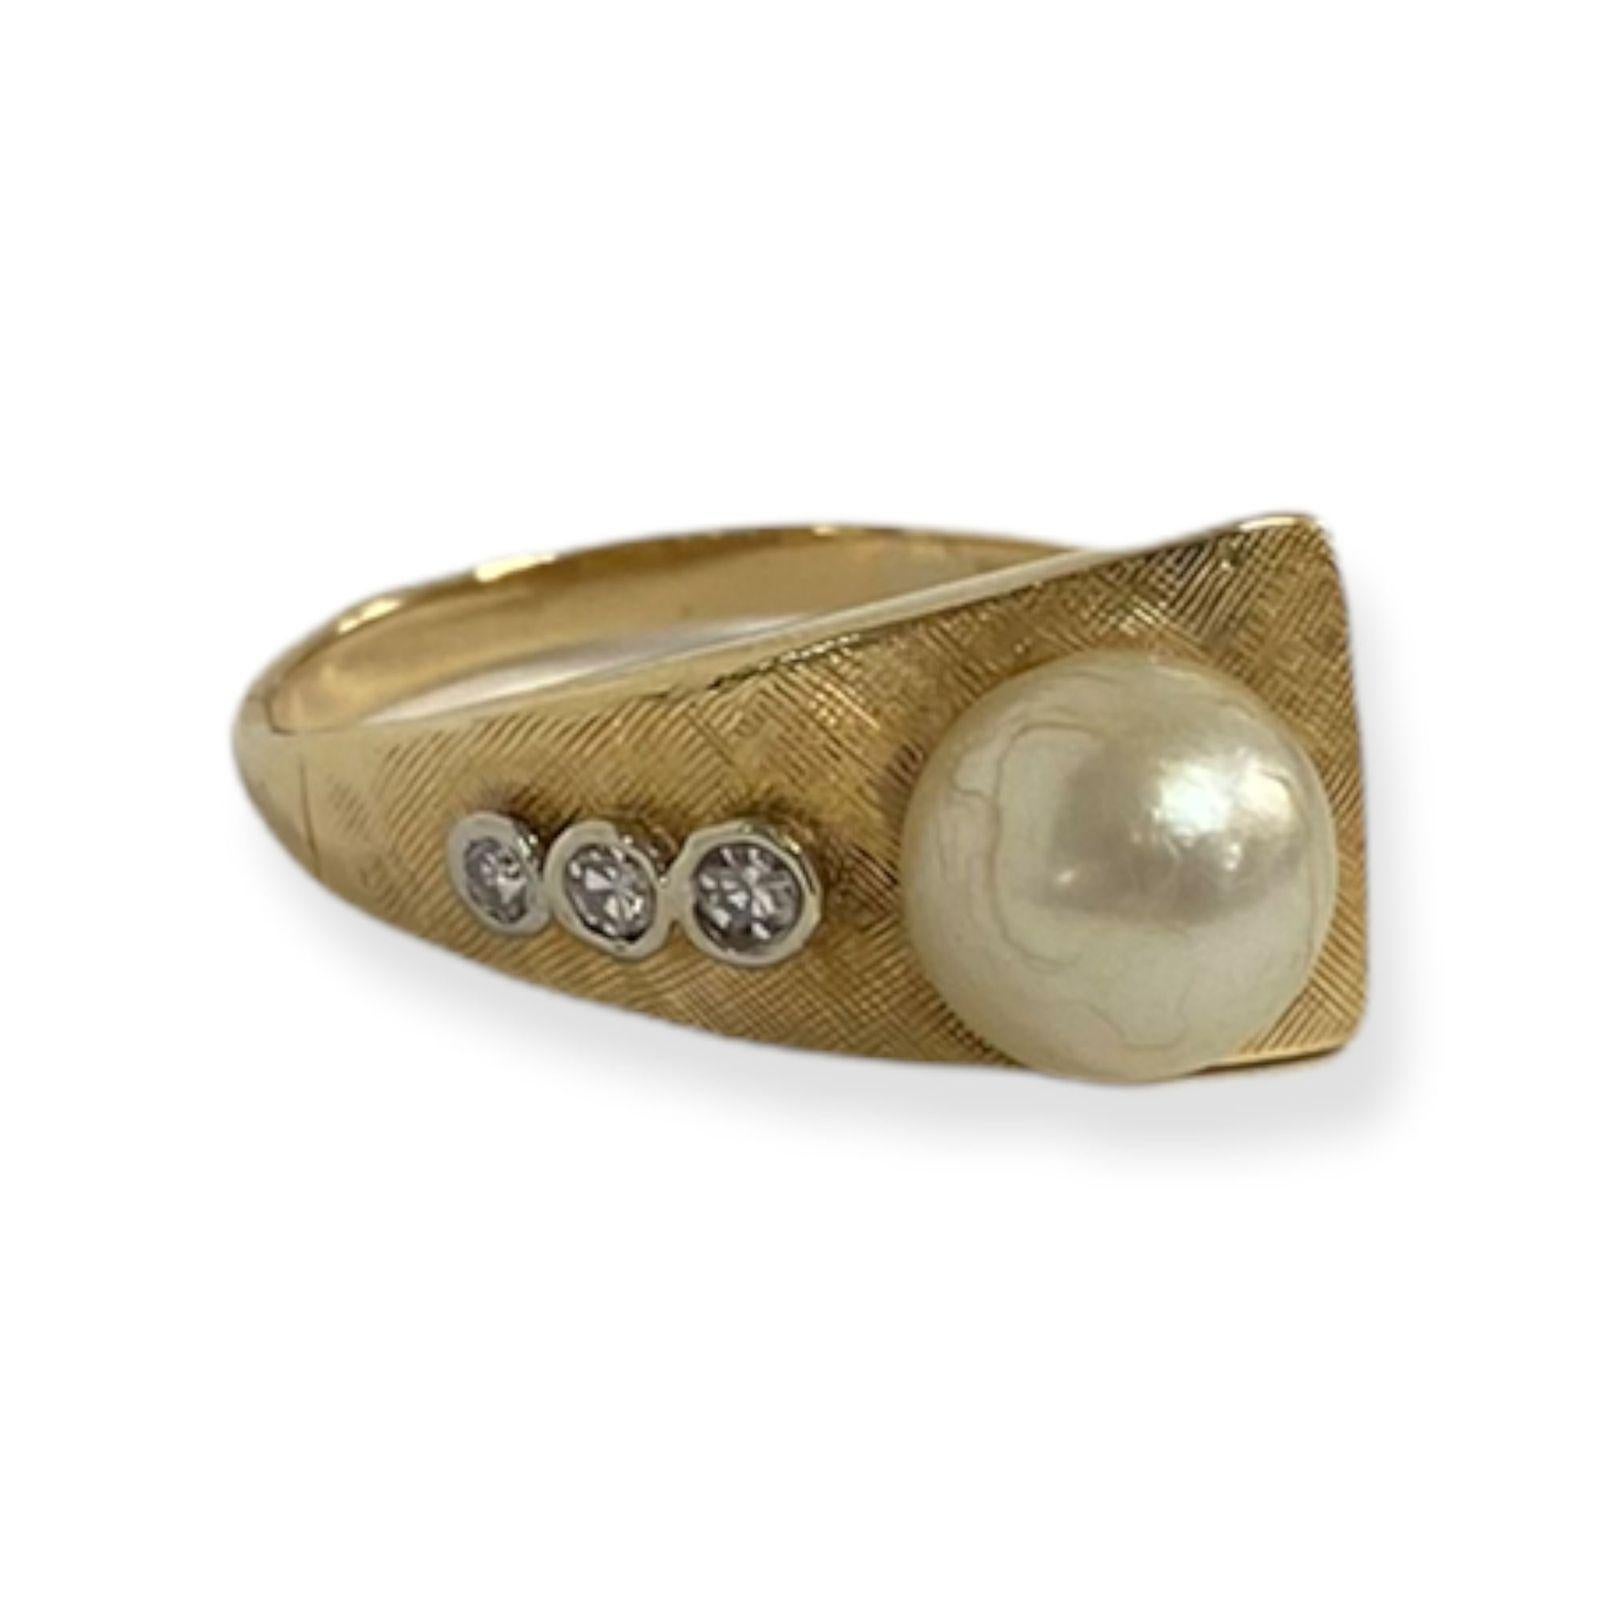 Cette bague abstraite de la collection Vintage-Inspired One-of-a-Kind de Suzy Levian présente 3 diamants blancs (.10cttw) sertis en chaton sur une bande, accentuant une perle blanche centrale de 7 mm dans une monture en or jaune 14k. Si complexe